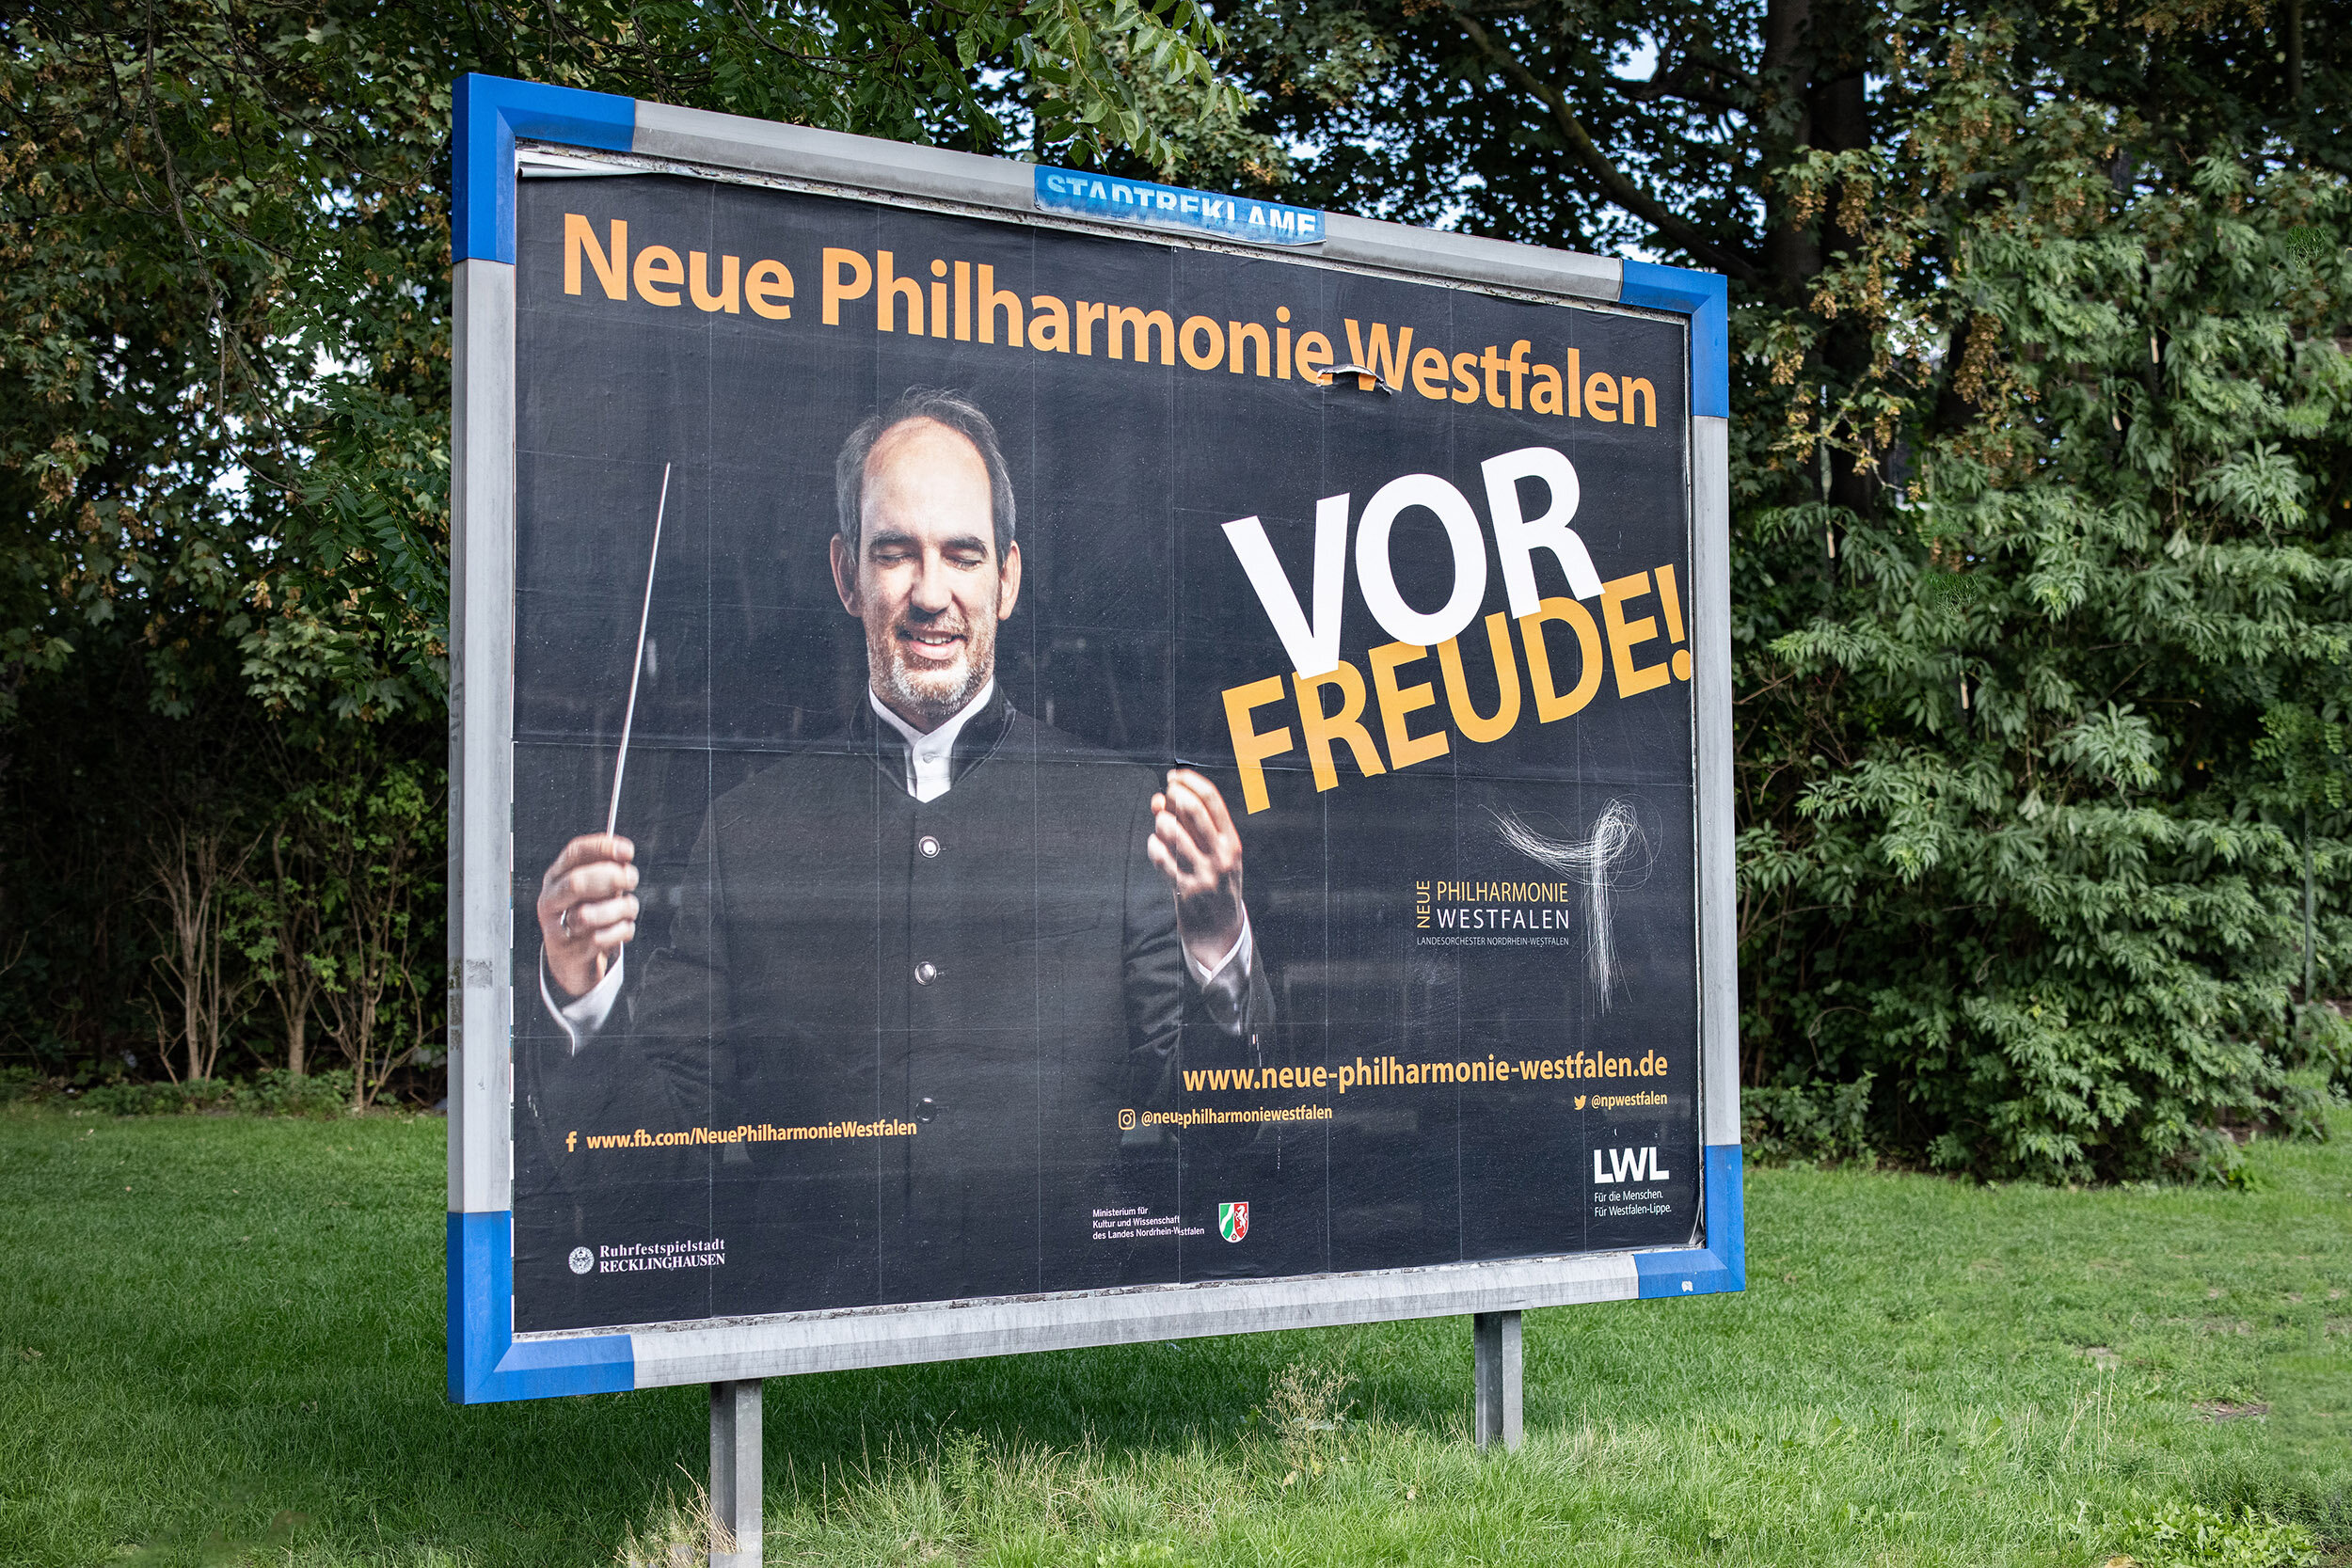  Plakatkampagne Neue Philharmonie Westfalen, FOTO: Marcel Kusch 